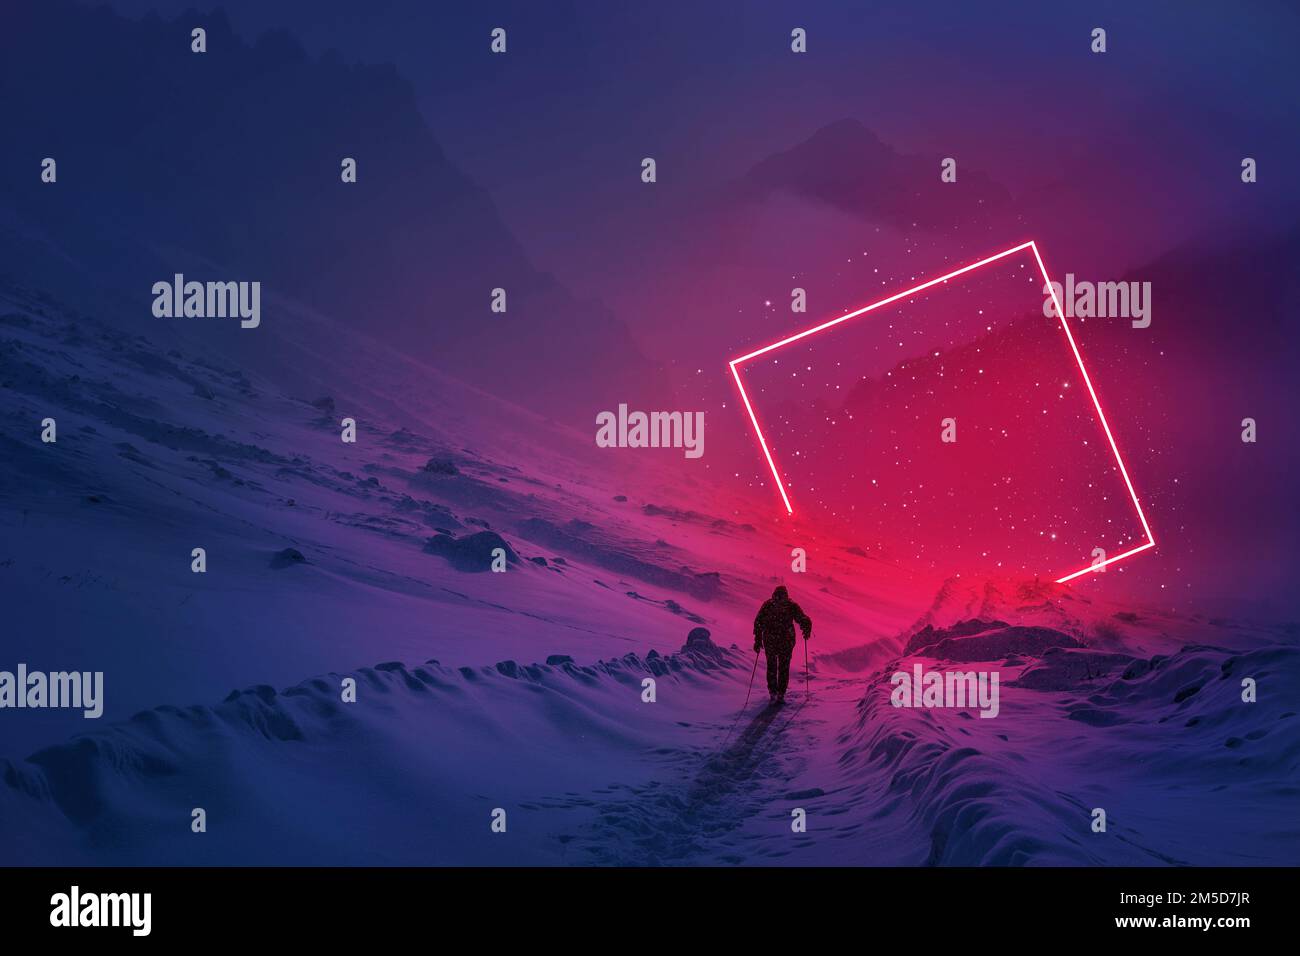 Moderner futuristischer Neon-abstrakter Hintergrund. Großer Platz, leuchtendes rotes Objekt in der Mitte und einsamer Mann, der auf dem Schneemberg spaziert. Dunkle Szene mit Stockfoto